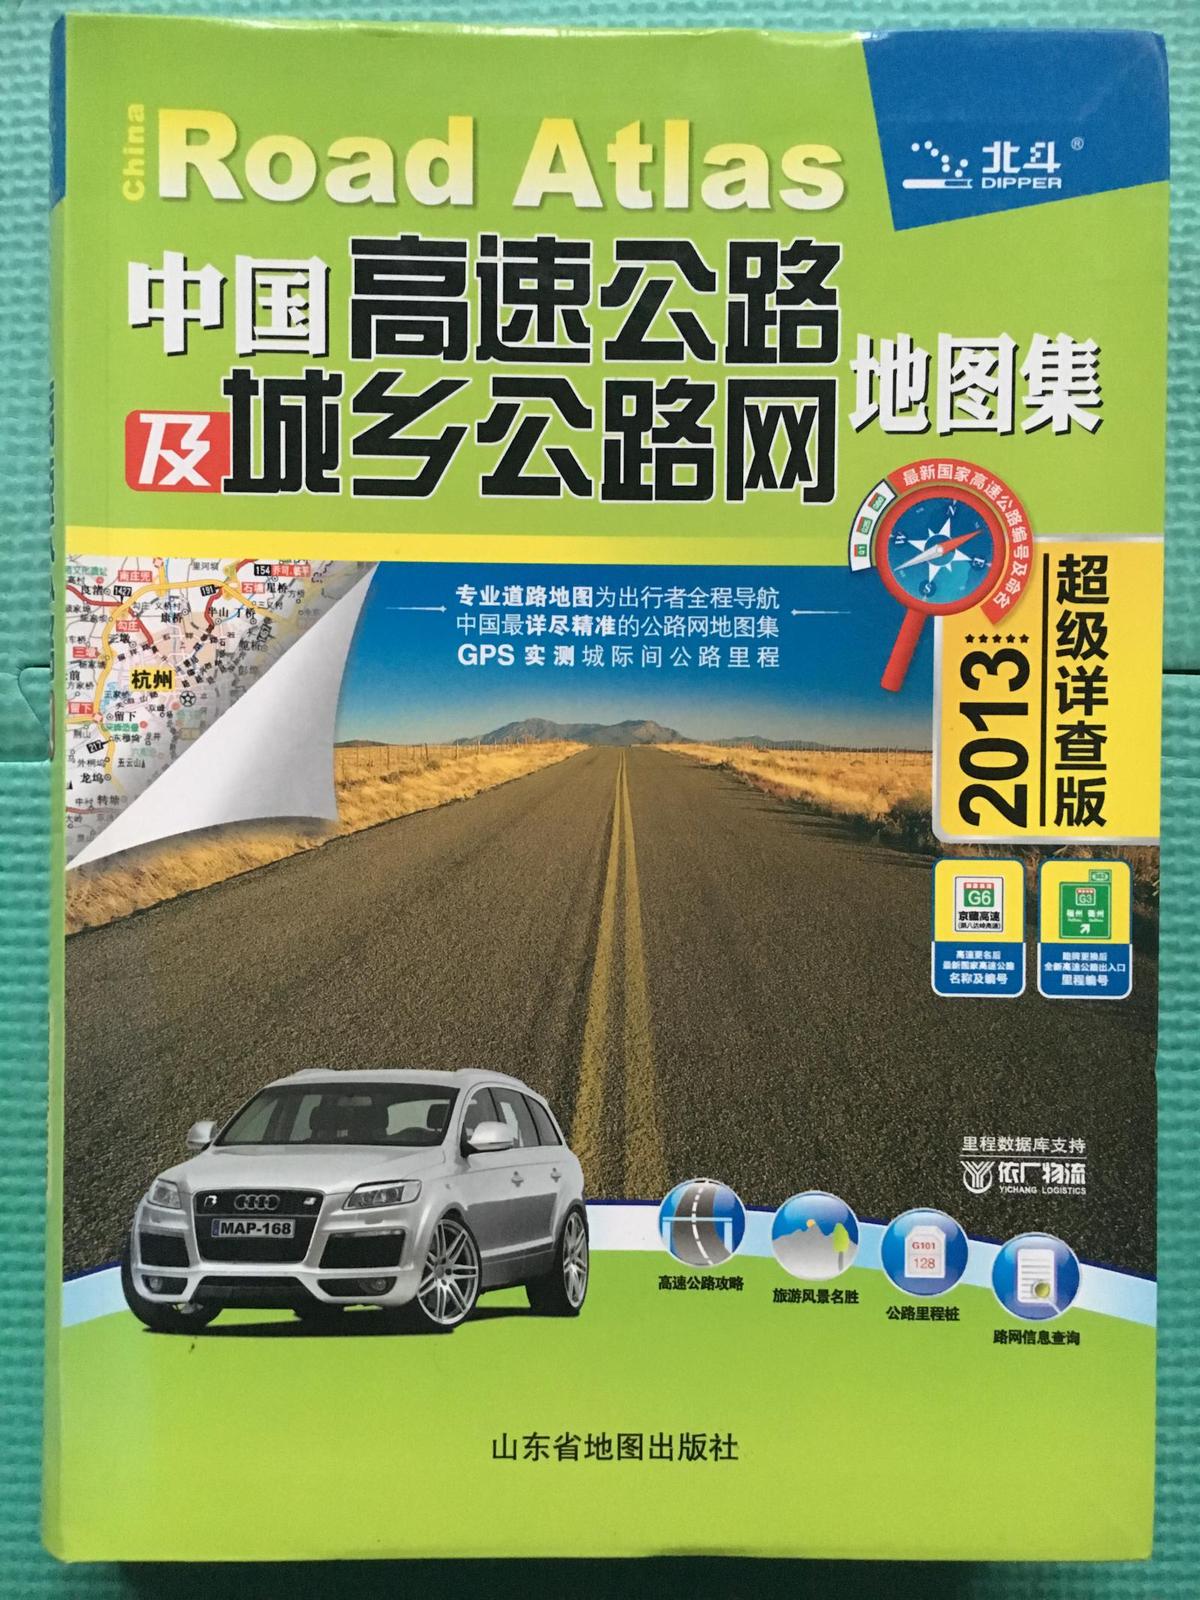 中国高速公路及城乡公路网地图集▪超级详查版